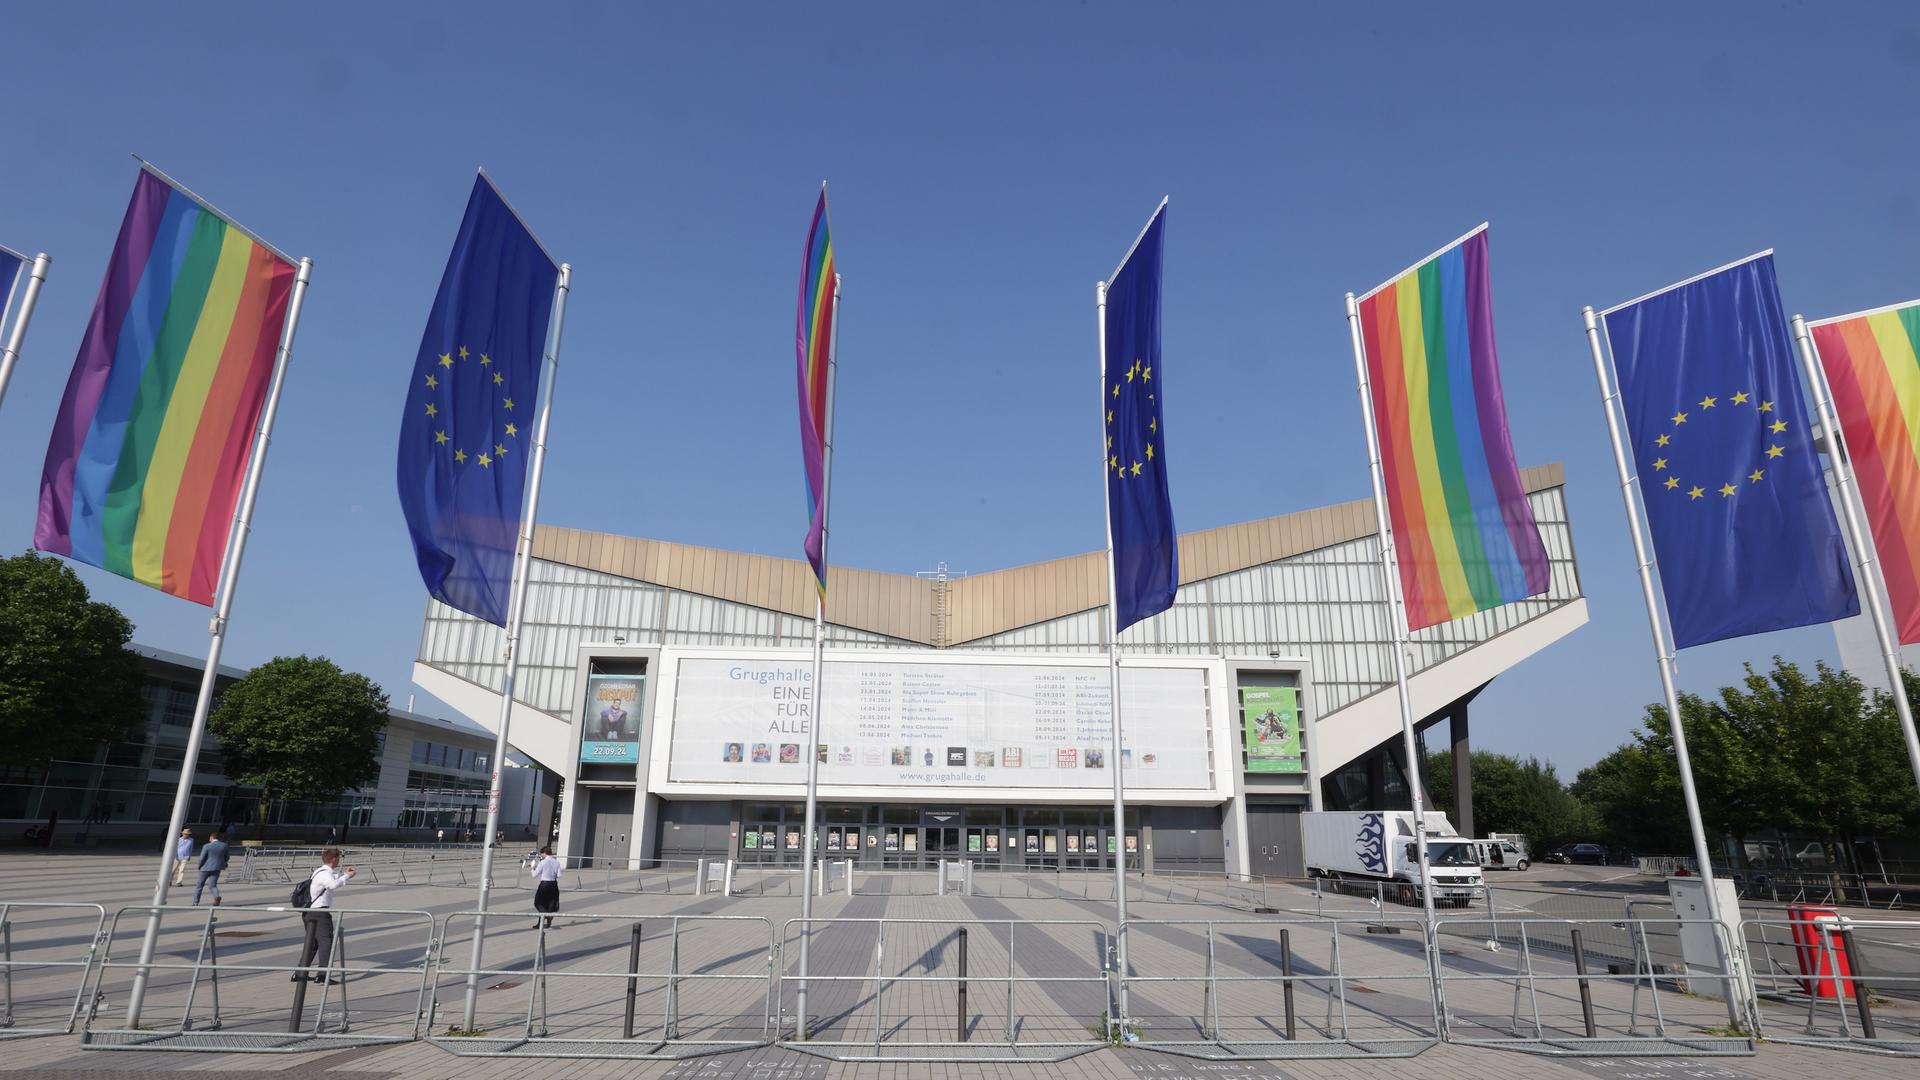 Regenbogenflaggen und Flaggen der Europäischen Union sind vor der Grugahalle in Essen, wo am Wochenende die AfD ihr Parteitag abhalten wird, gehisst.